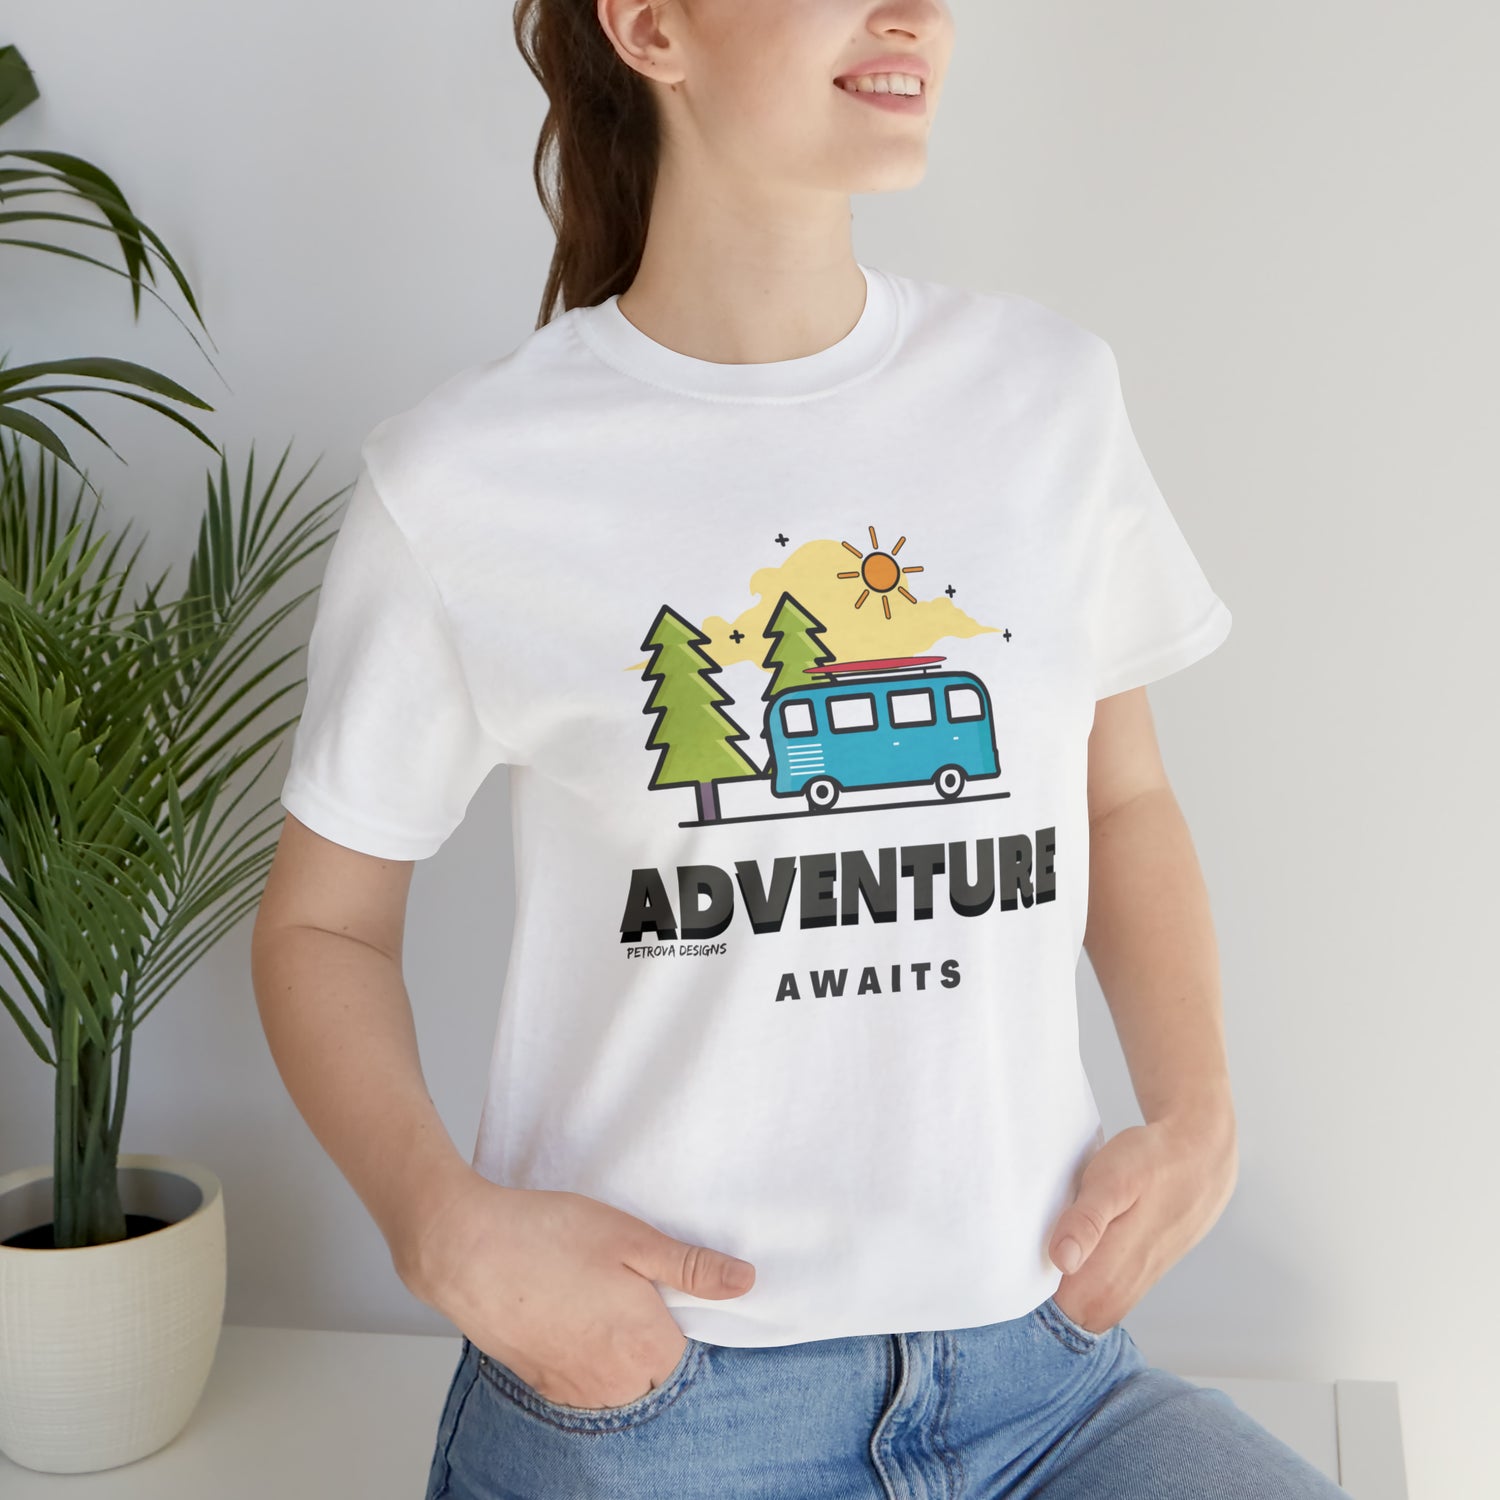 T-Shirt for Travelers | Traveler Tee Gift Idea | Adventurer White T-Shirt Petrova Designs